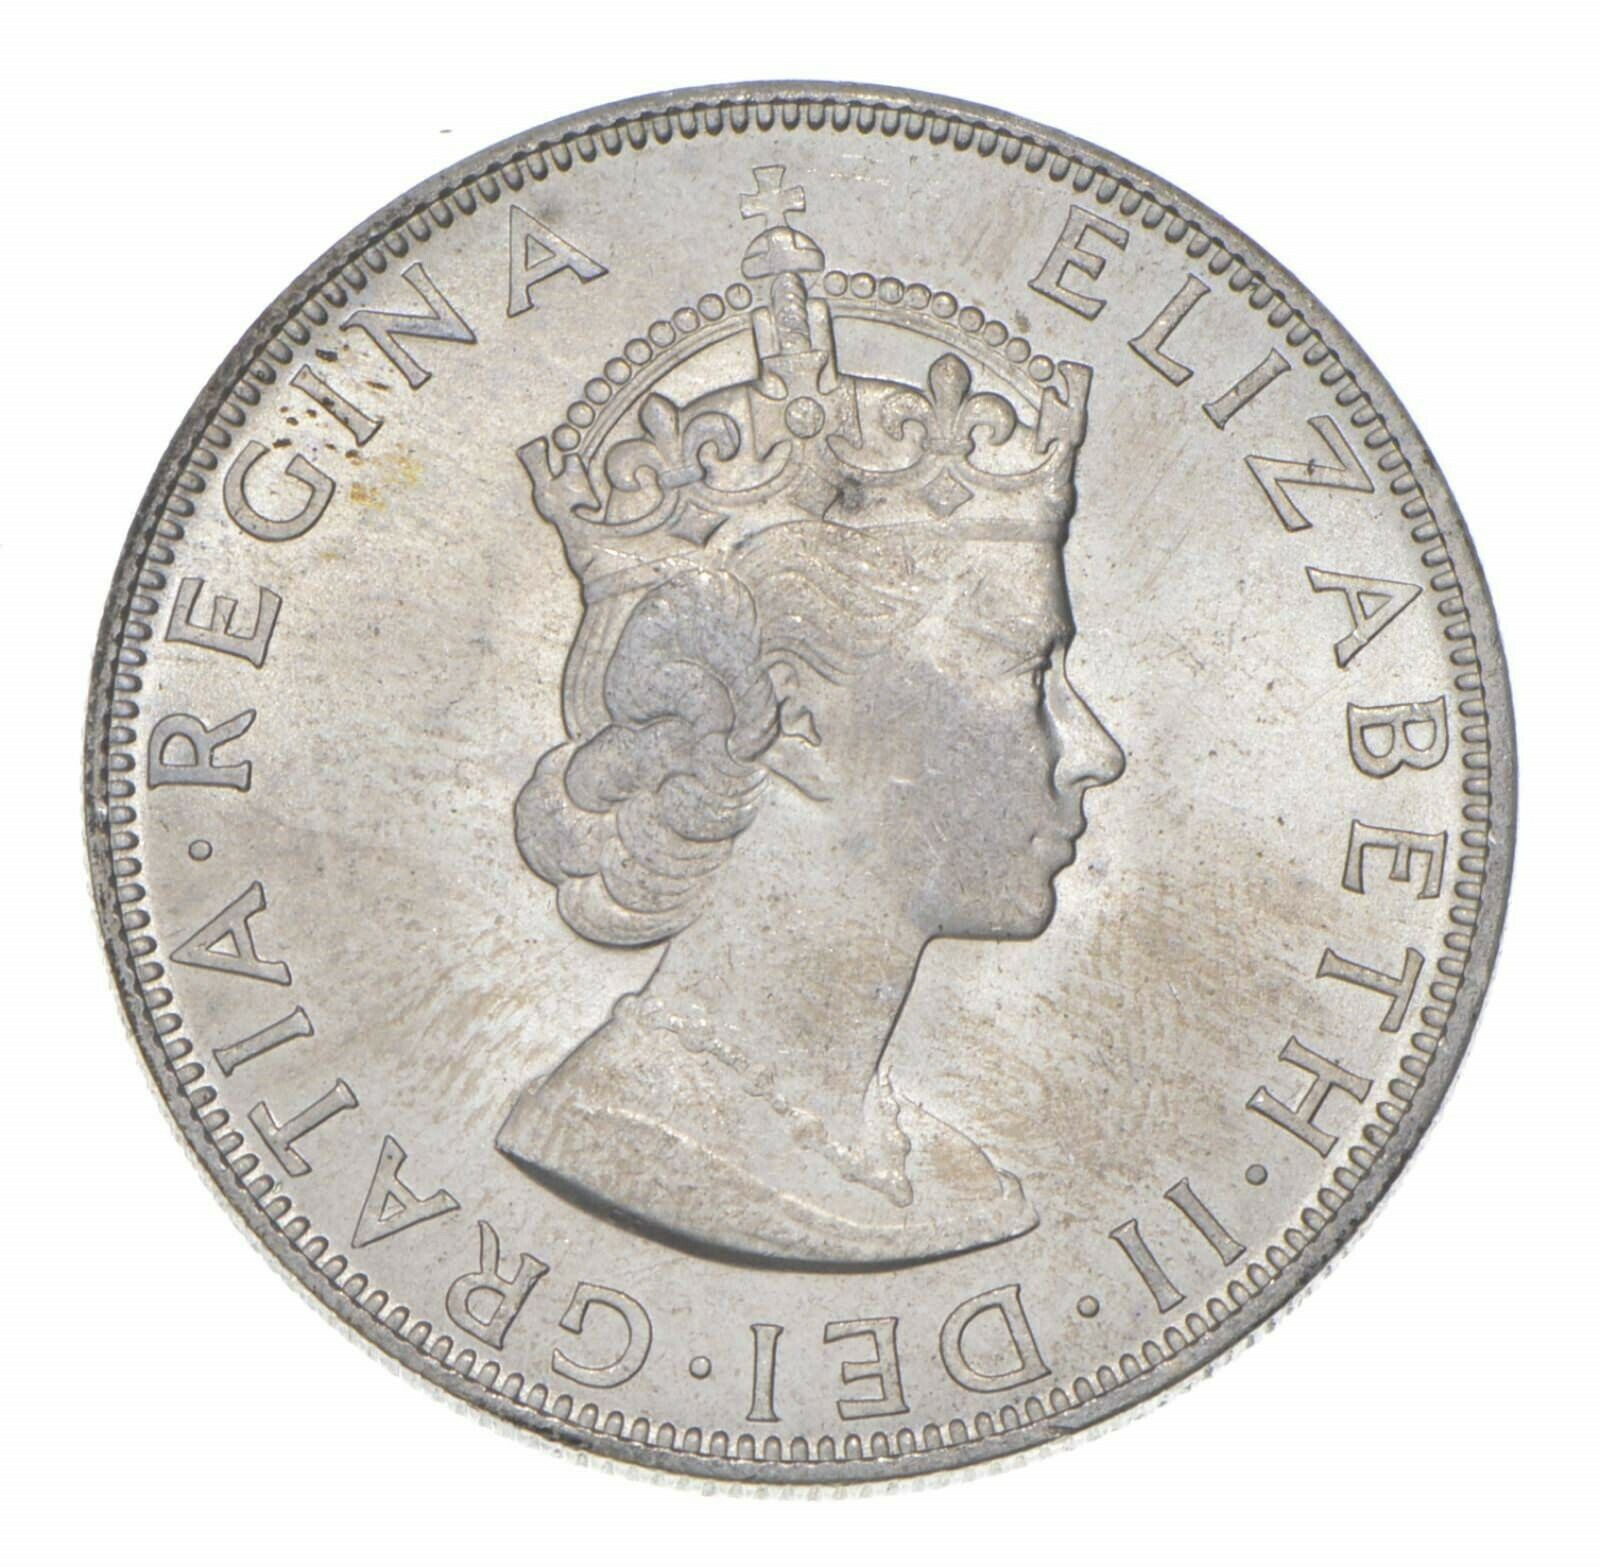 Choice Bu Unc 1964 Bermuda 1 Crown Silver Coin - Mint State *731